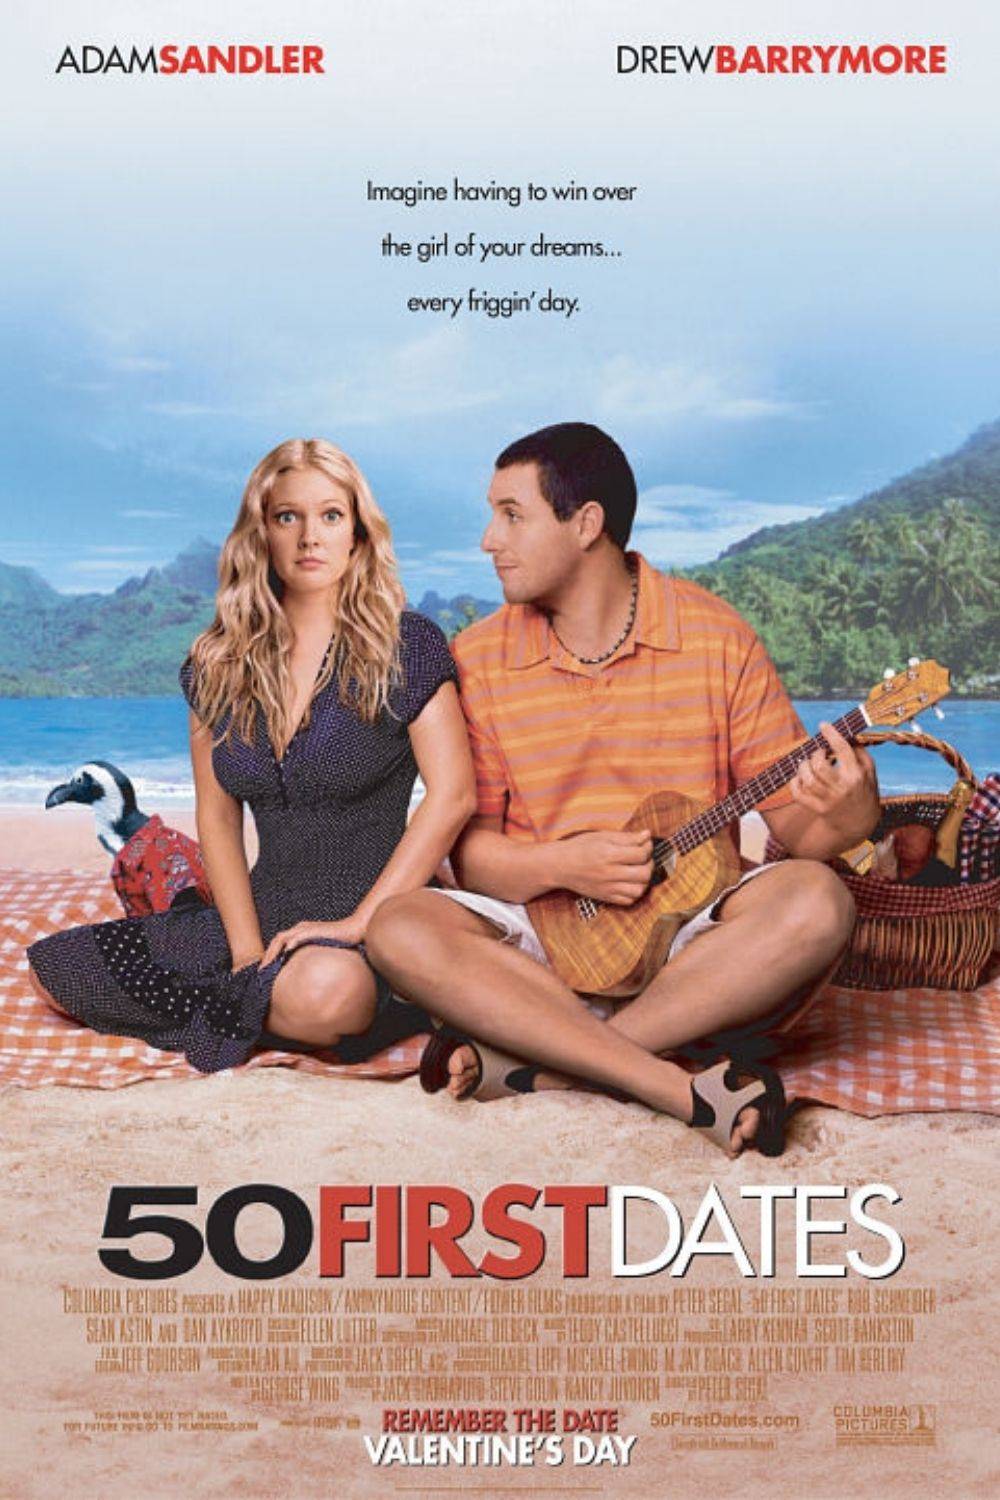 Película de amor divertida - Como si fuera la primera vez (2004)